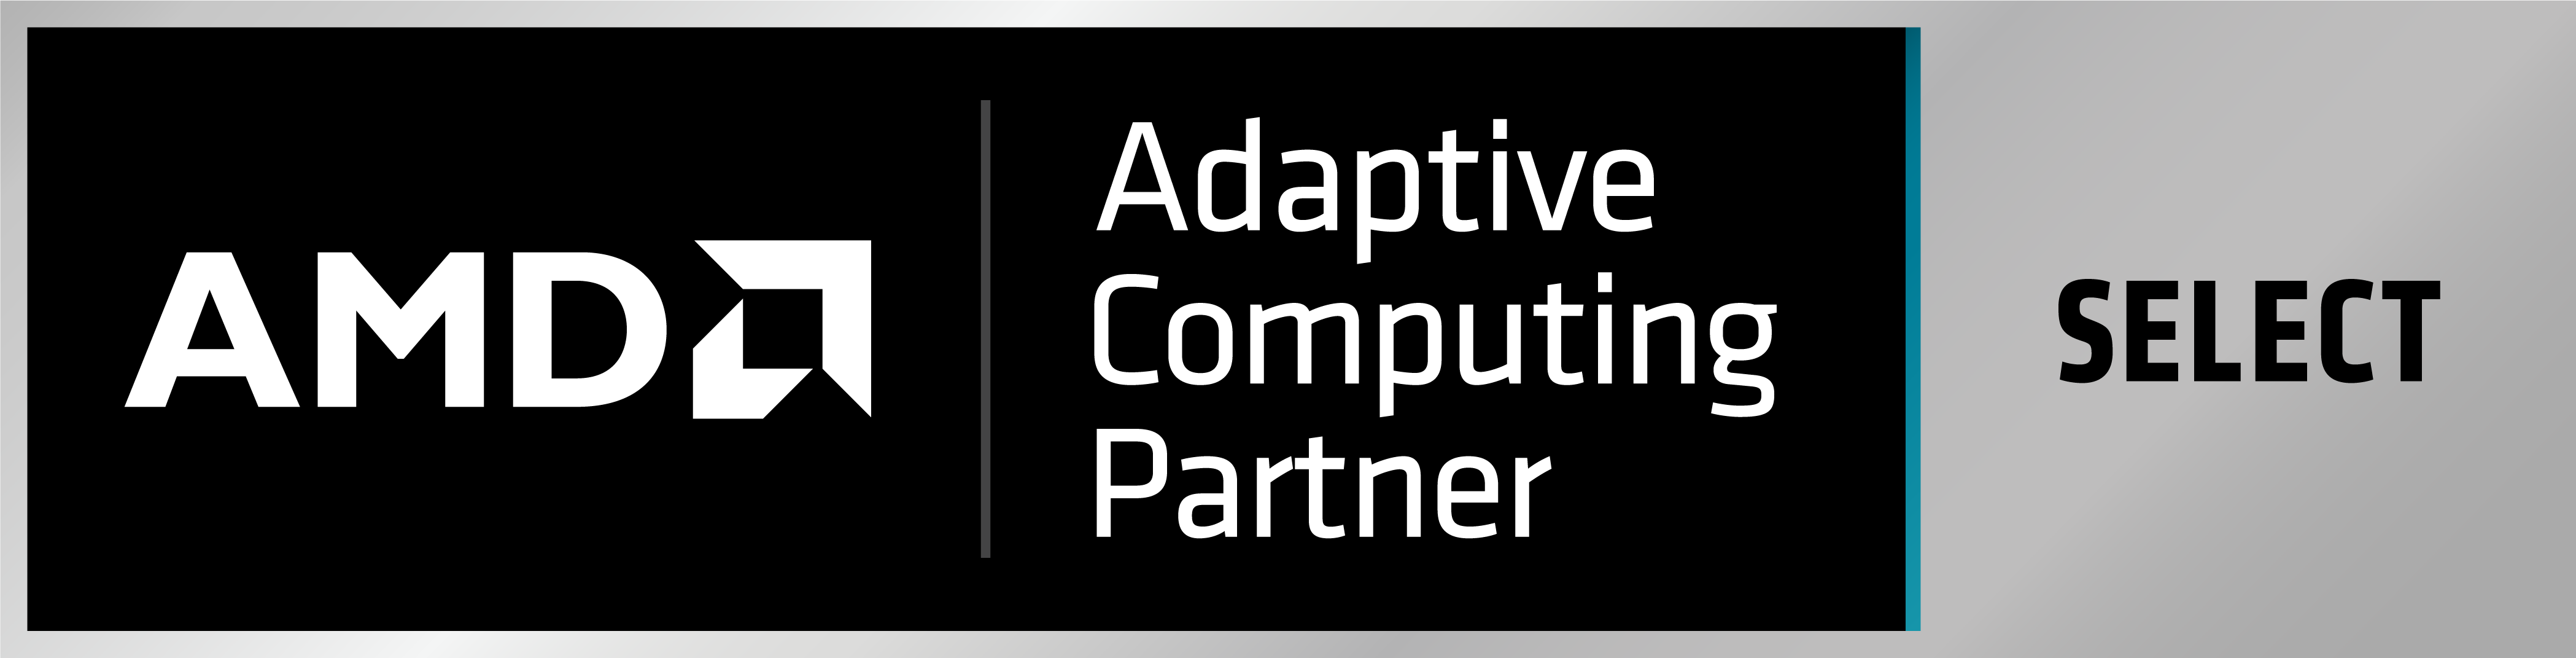 AMD Adaptive Computing Partner - Select